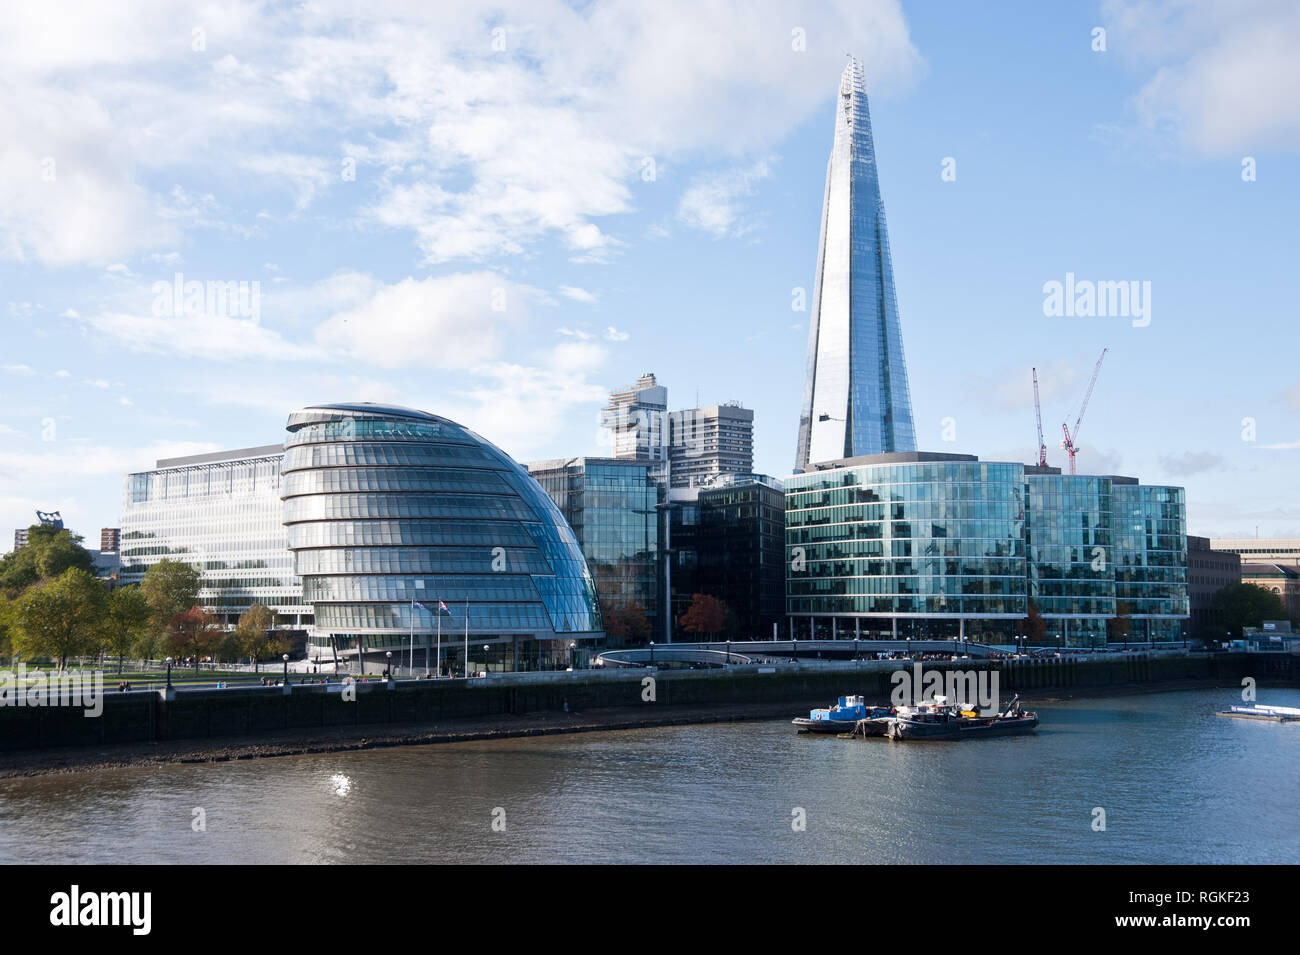 Hôtel de ville est le siège de la Greater London Authority (GLA) qui comprend le maire de Londres et l'Assemblée de Londres. Il est situé dans la région de sout Banque D'Images